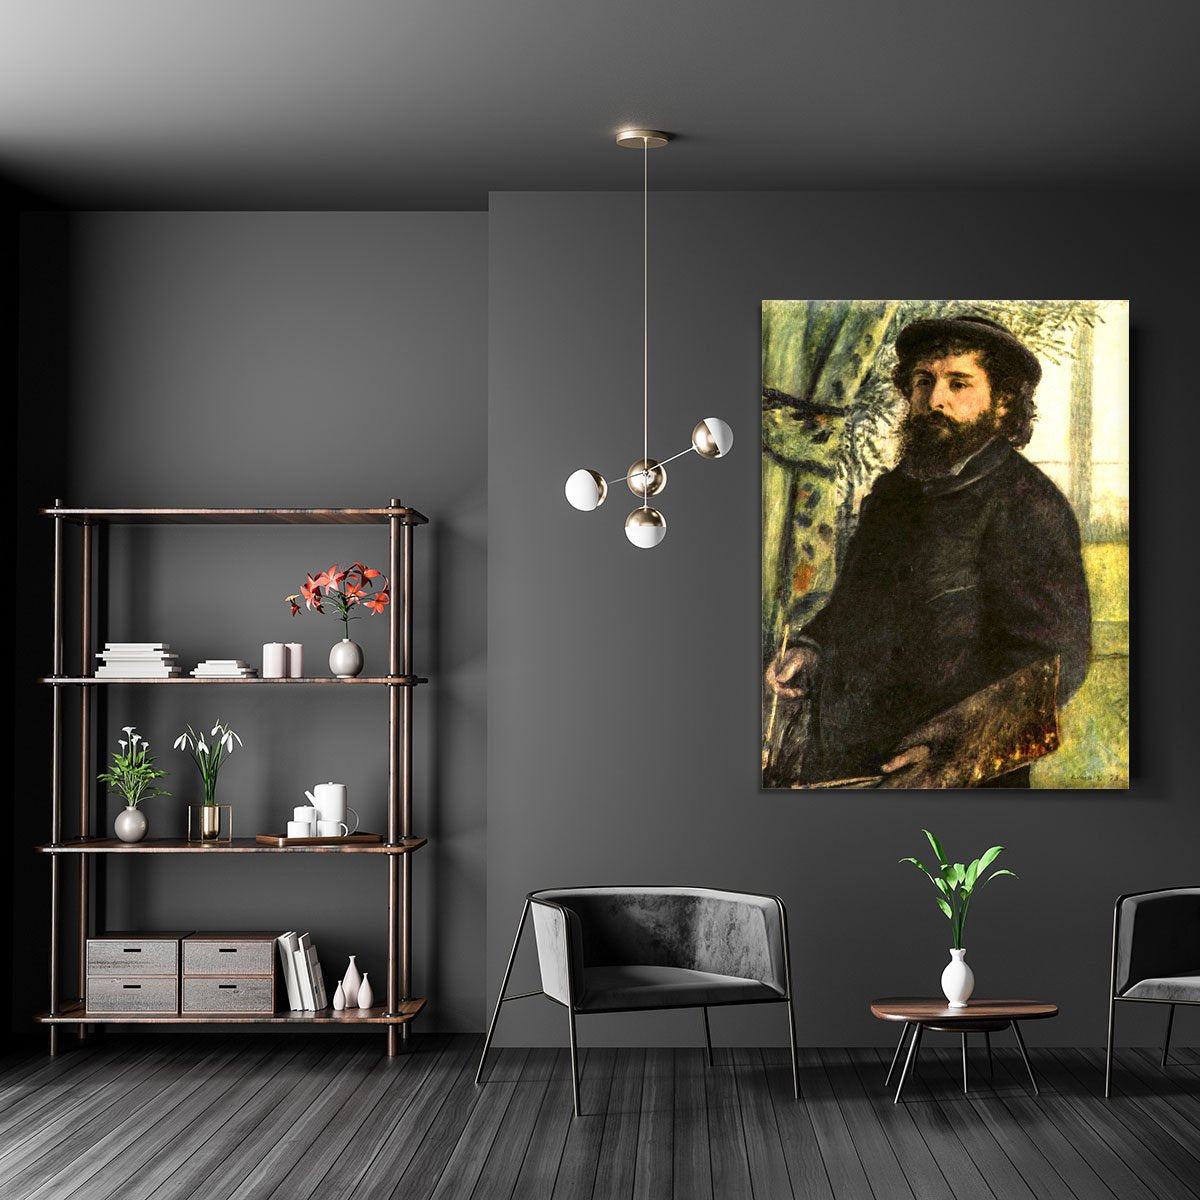 Portrait of the painter Claude Monet by Renoir Canvas Print or Poster